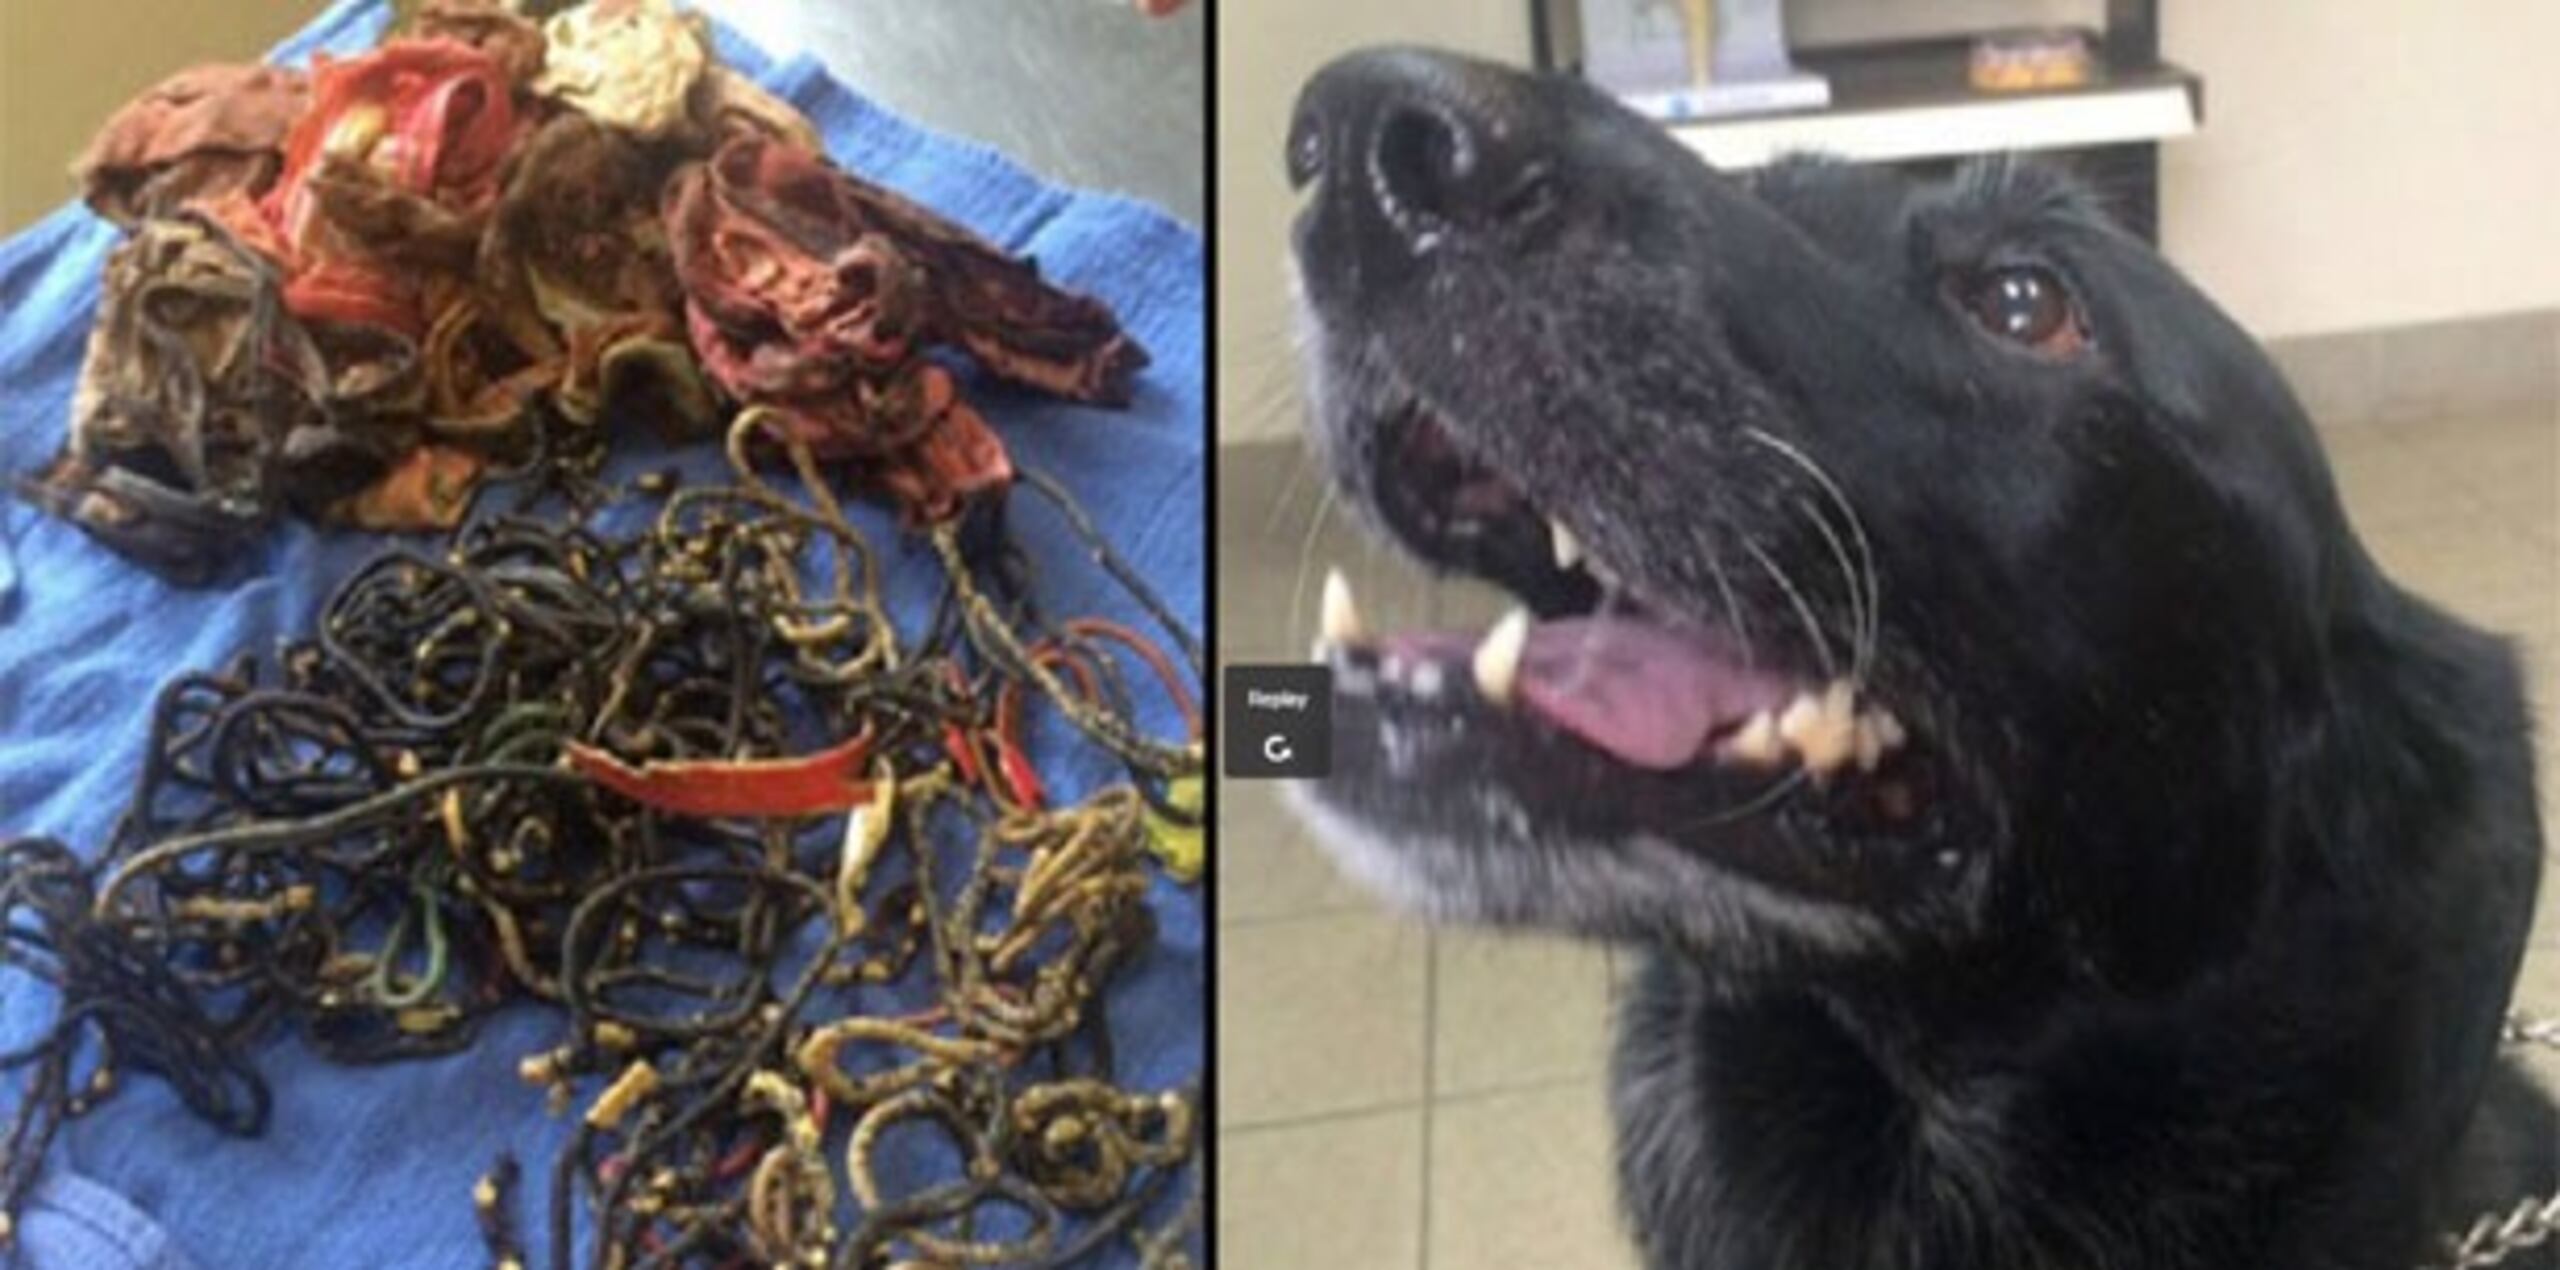 La cirugía de la semana pasada duró dos horas y el veterinario y su técnico estaban impactados por los objetos que sacaron. (www.wtae.com)